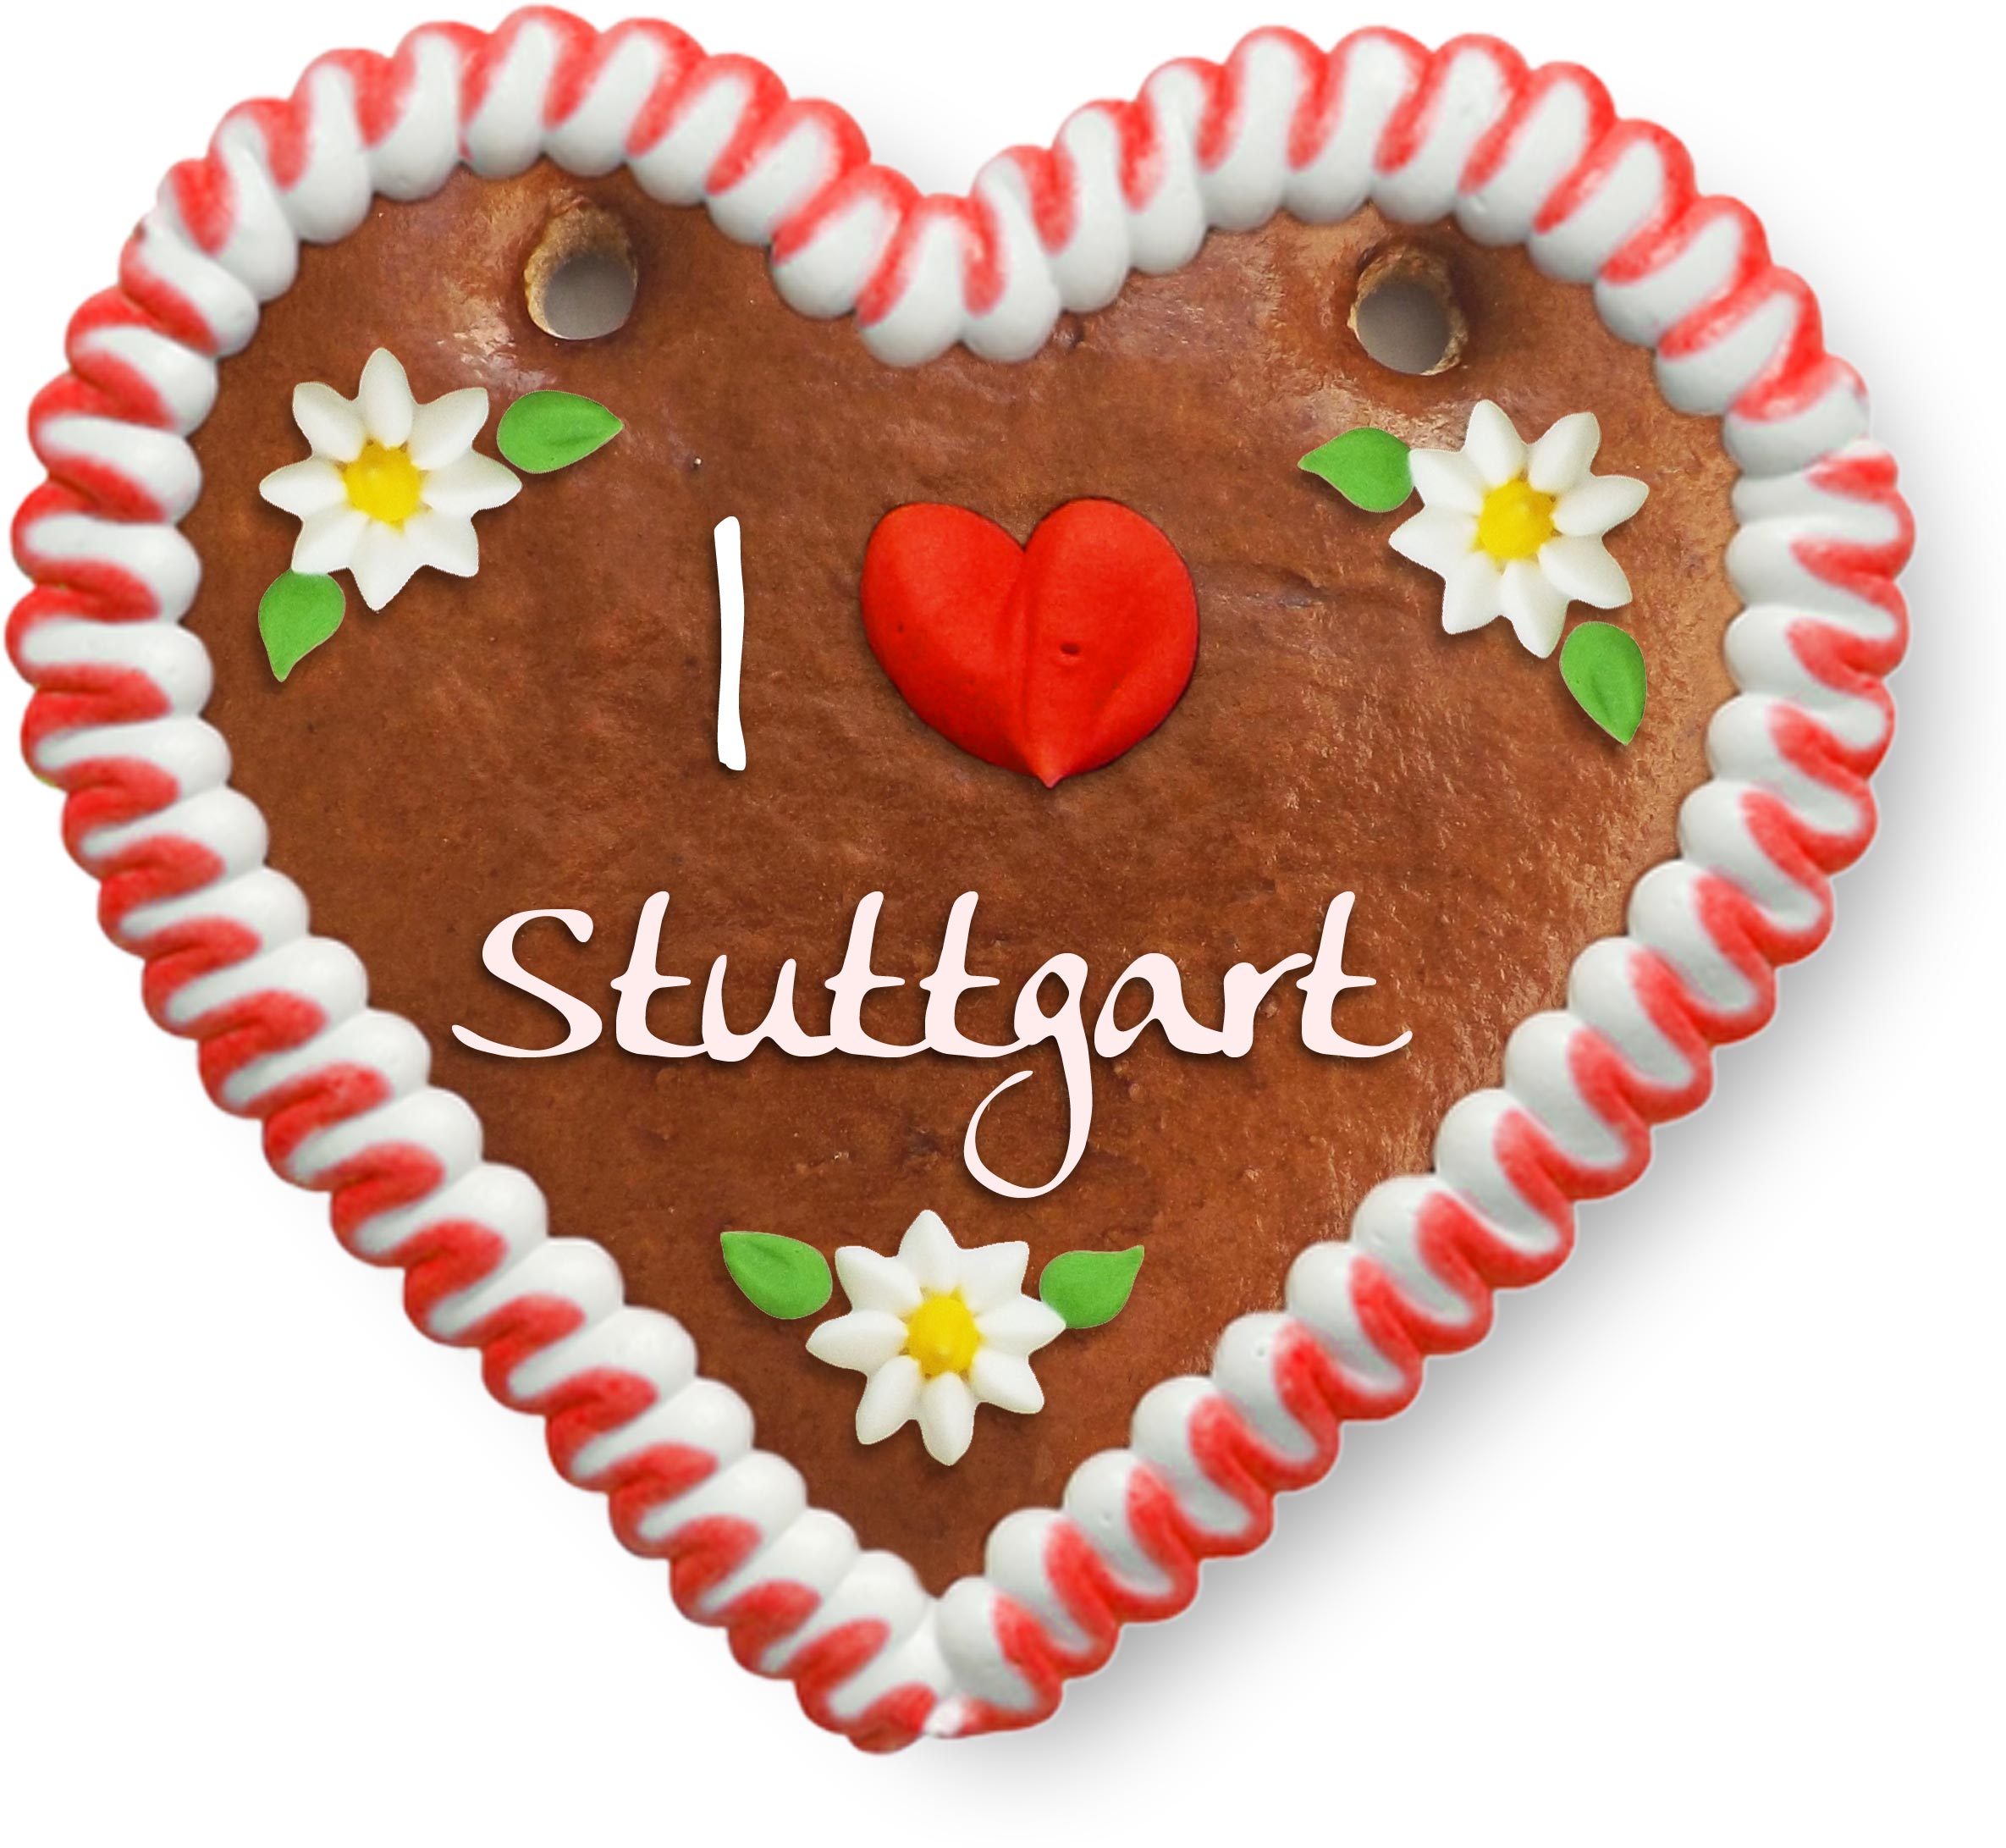 Gingerbread Heart I ❤ Stuttgart - 12cm - Lebkuchen-Markt.de